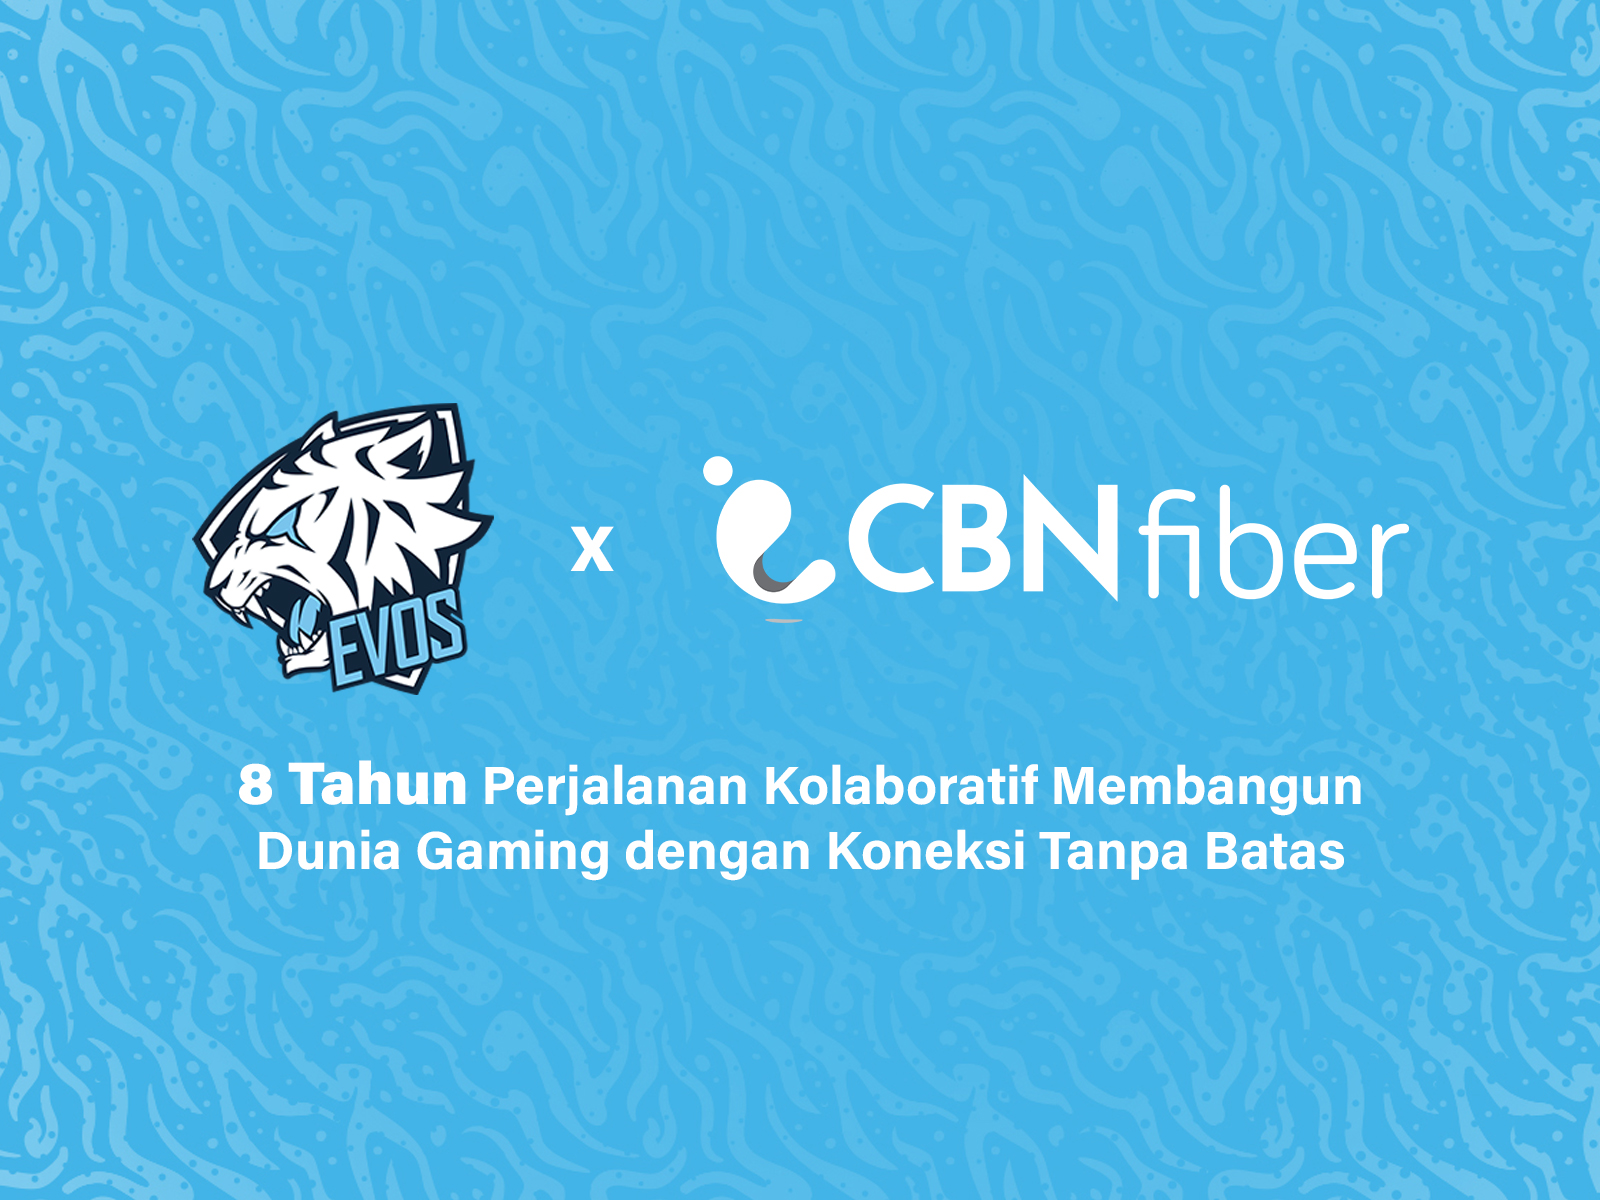 EVOS dan CBN Fiber: 8 Tahun Membangun Koneksi Tanpa Batas di Industri Esports Indonesia